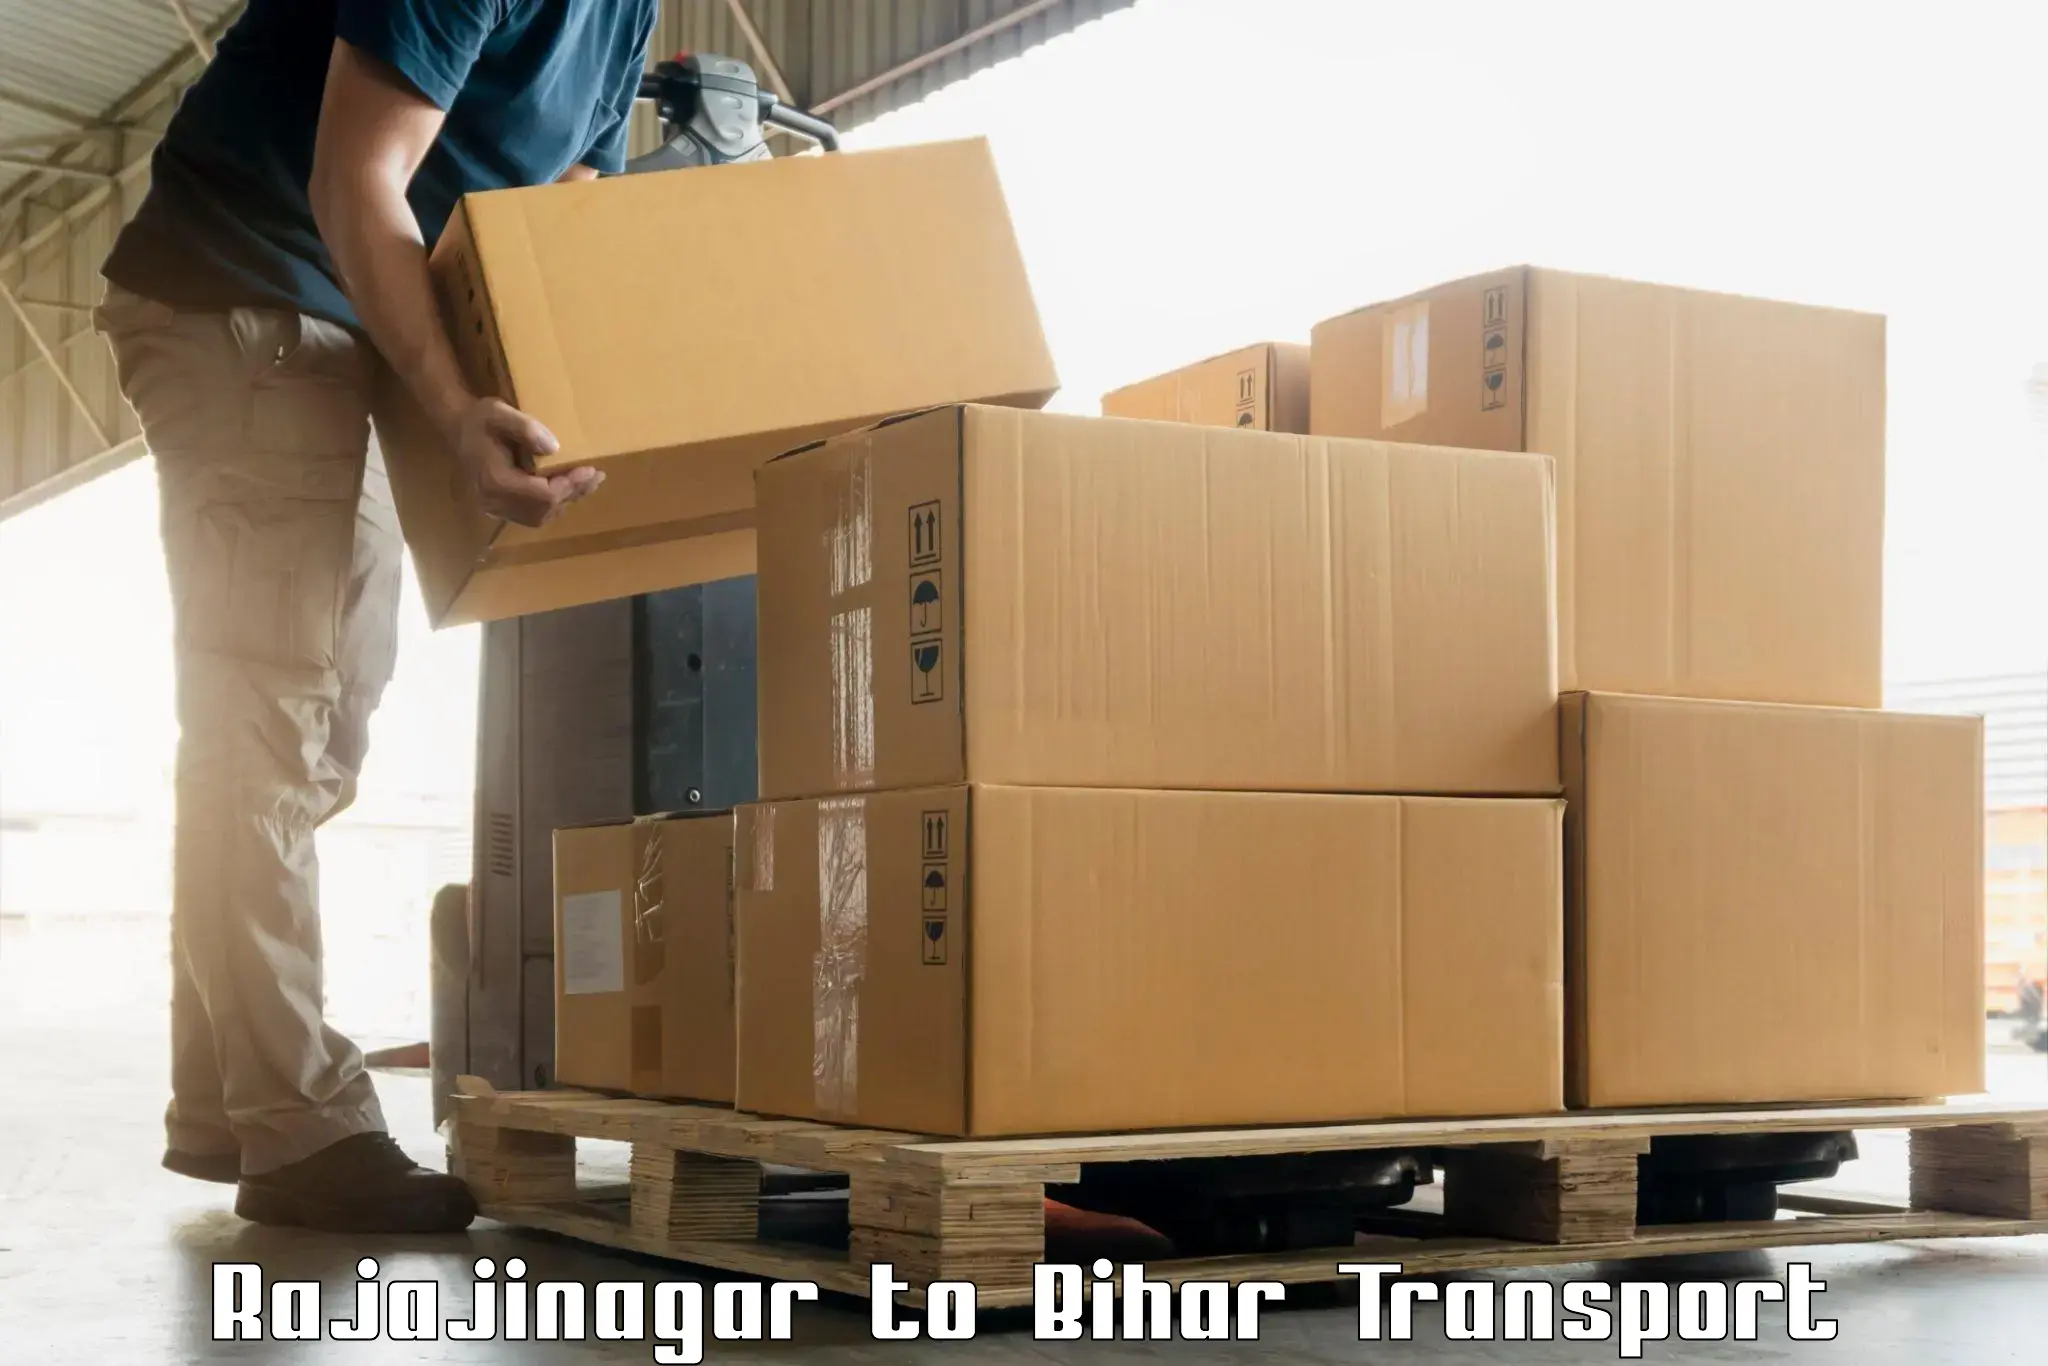 Container transport service Rajajinagar to Supaul